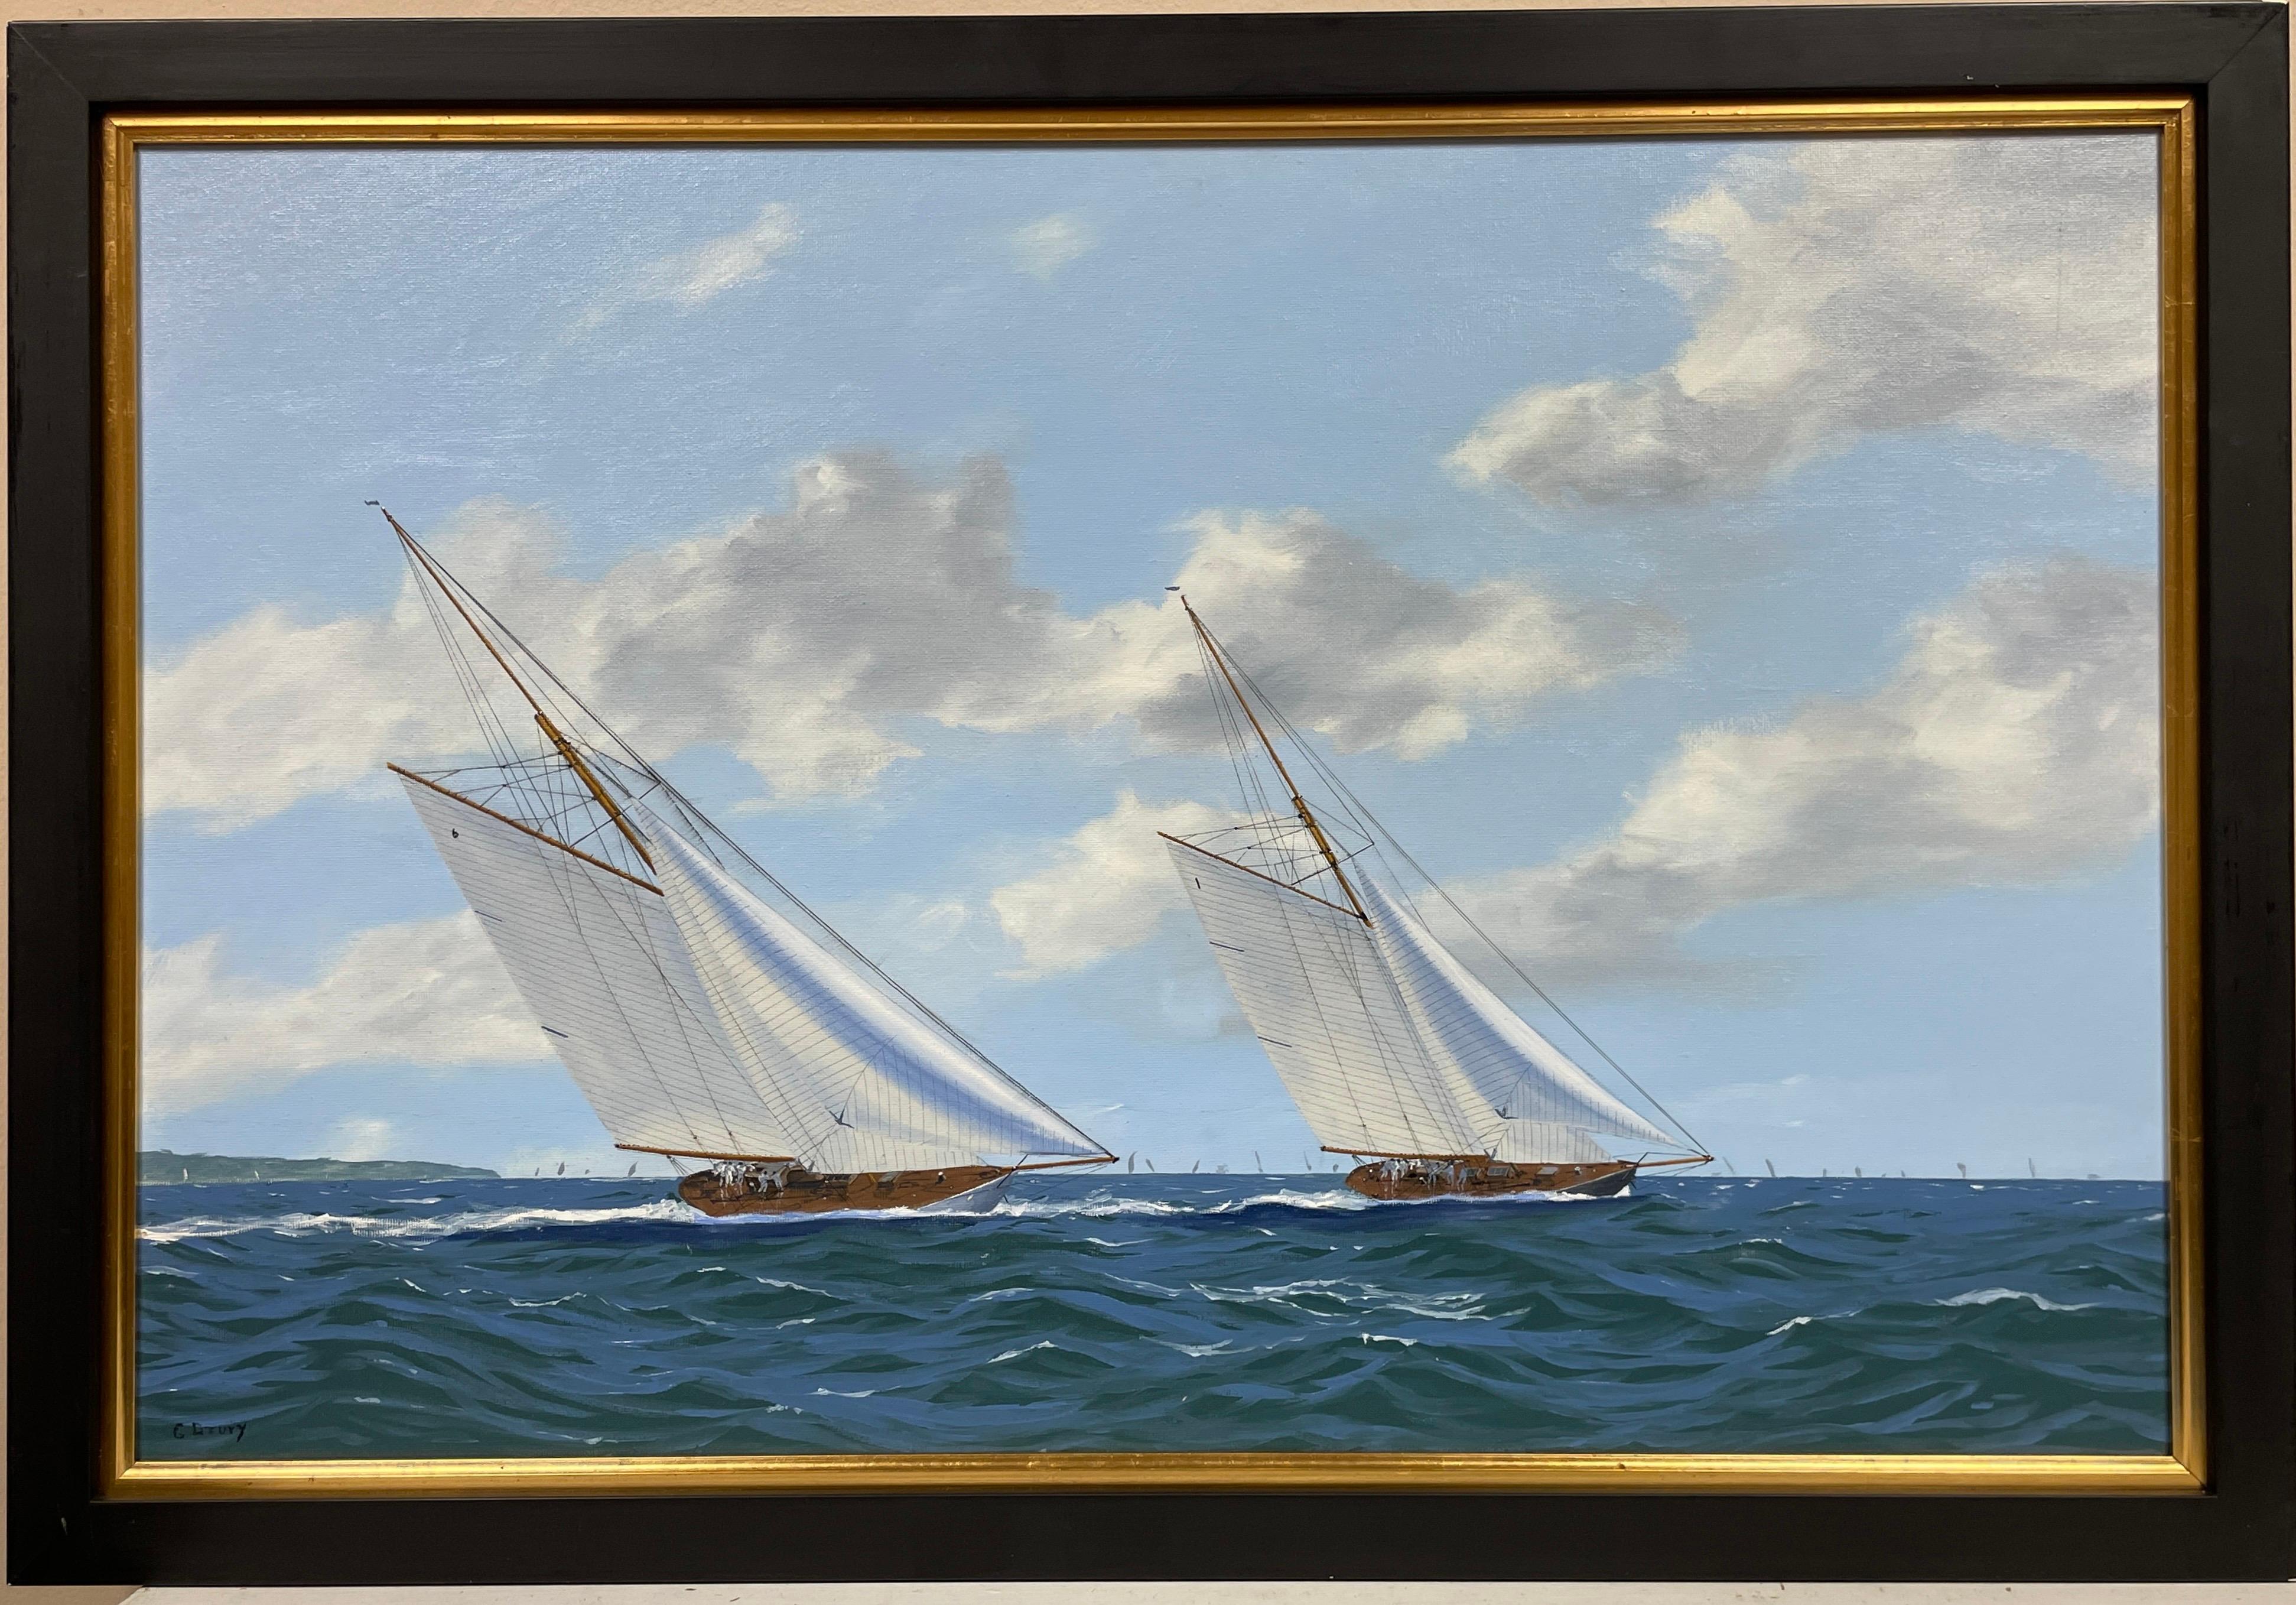 Klassische klassische Renn Yachts auf dem Solent, feines Ölgemälde der britischen Marine, signiert – Painting von George Drury